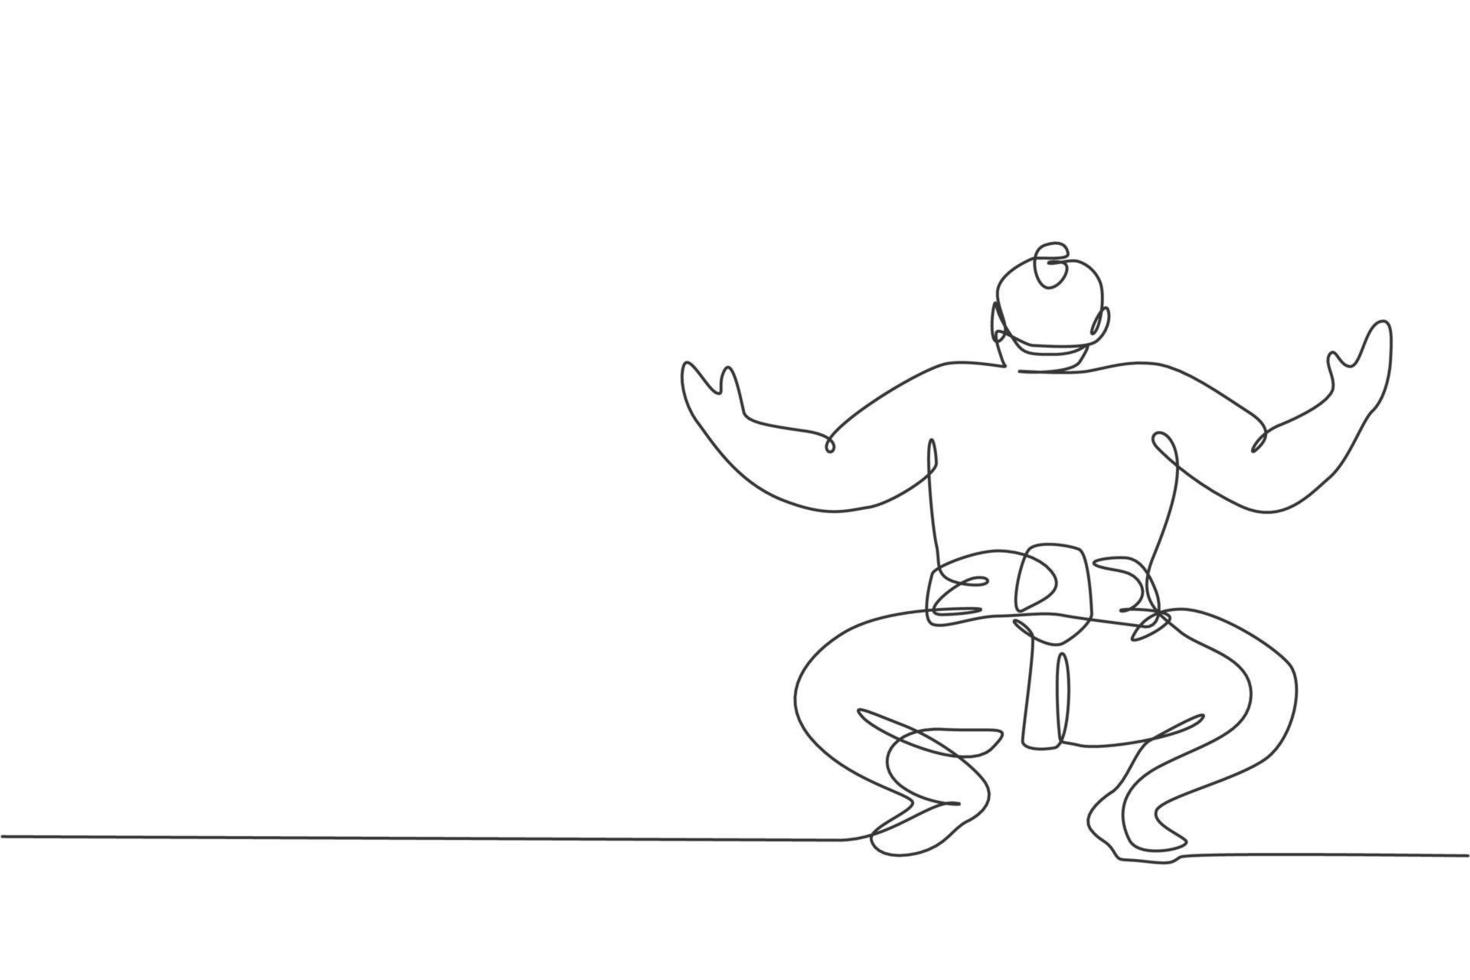 un dessin au trait continu d'un jeune grand rikishi japonais se prépare à se battre au tournoi du festival. concept de sport sumo traditionnel. illustration vectorielle de dessin graphique à une seule ligne dynamique vecteur